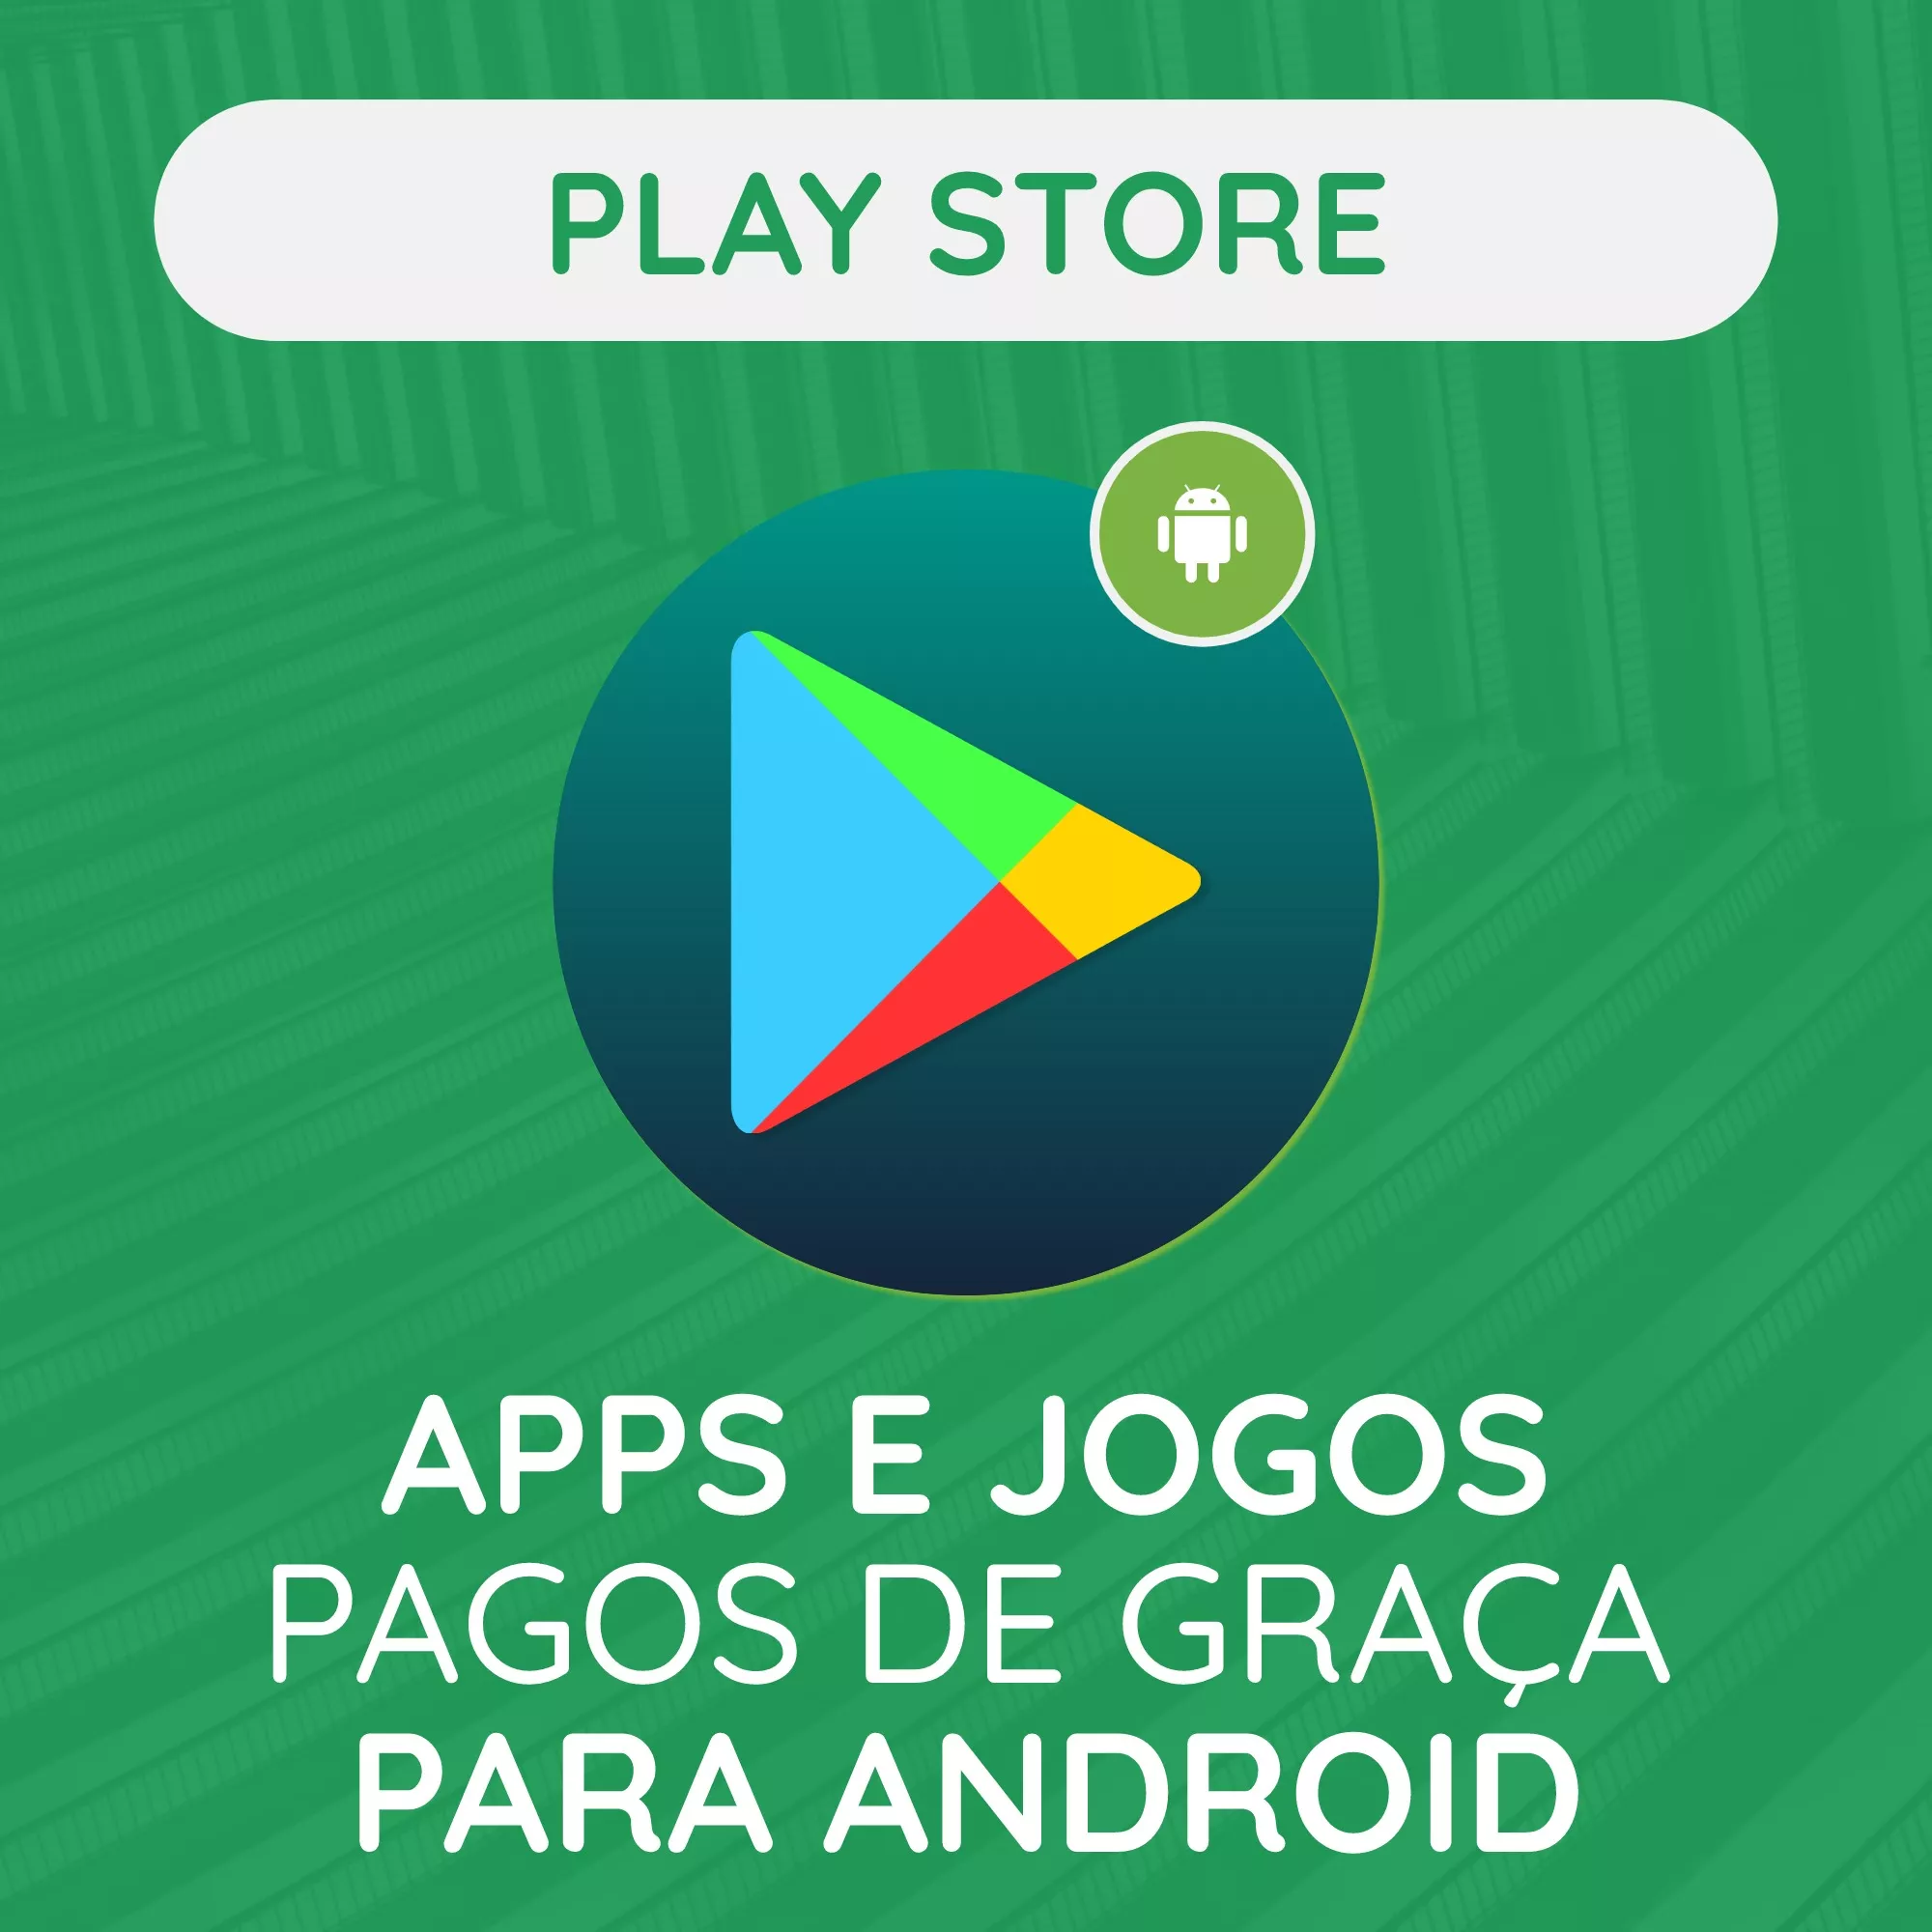 #Playstore: Apps E Jogos Pagos De Graça Para Android (21/06)